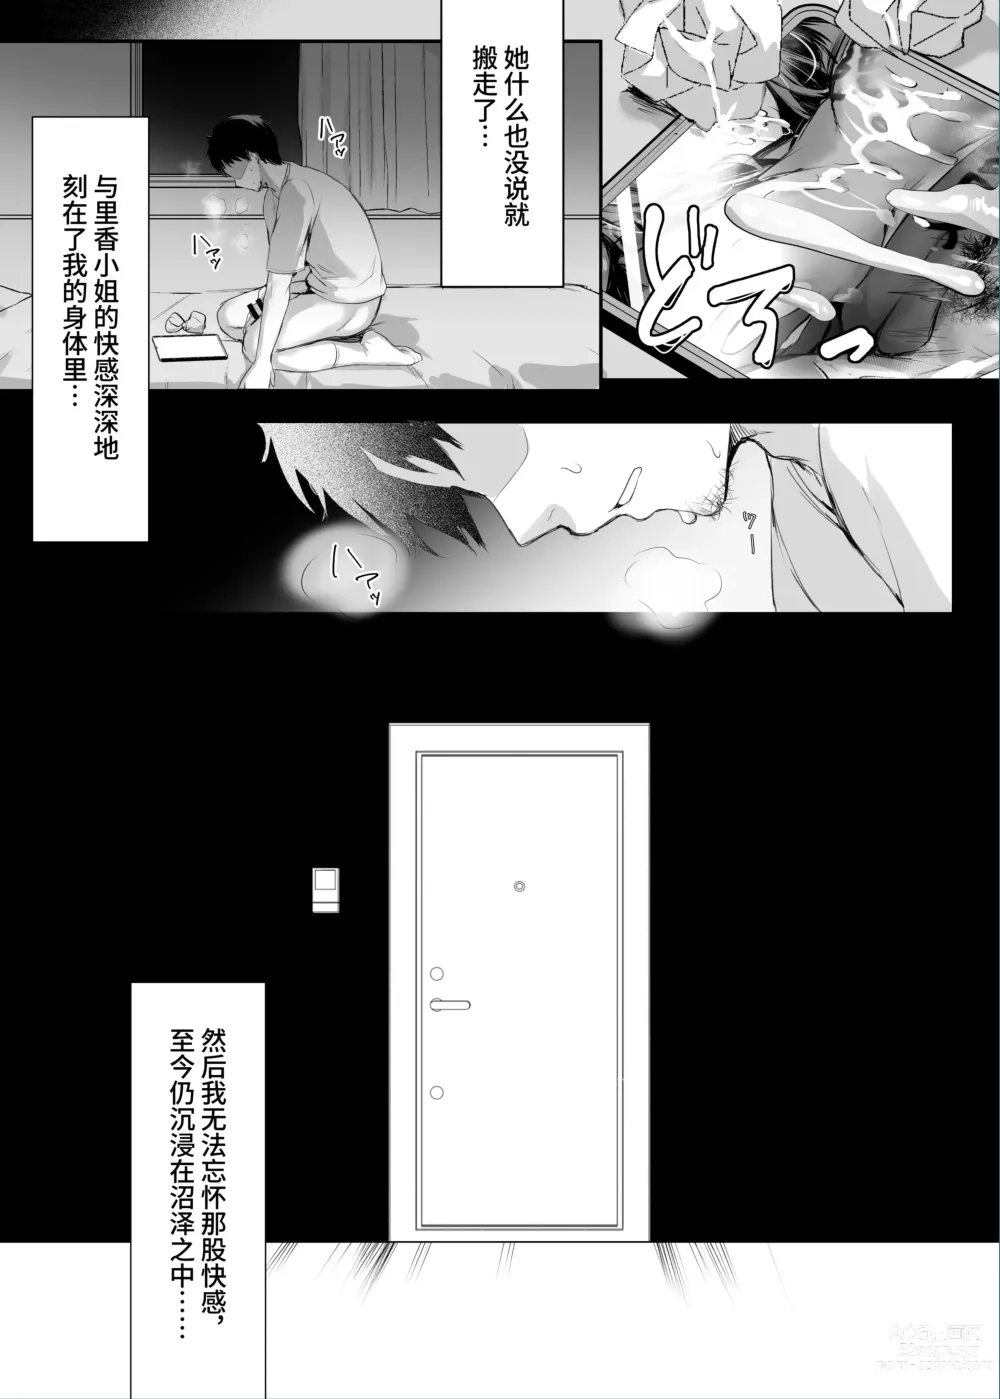 Page 33 of doujinshi Numaru.